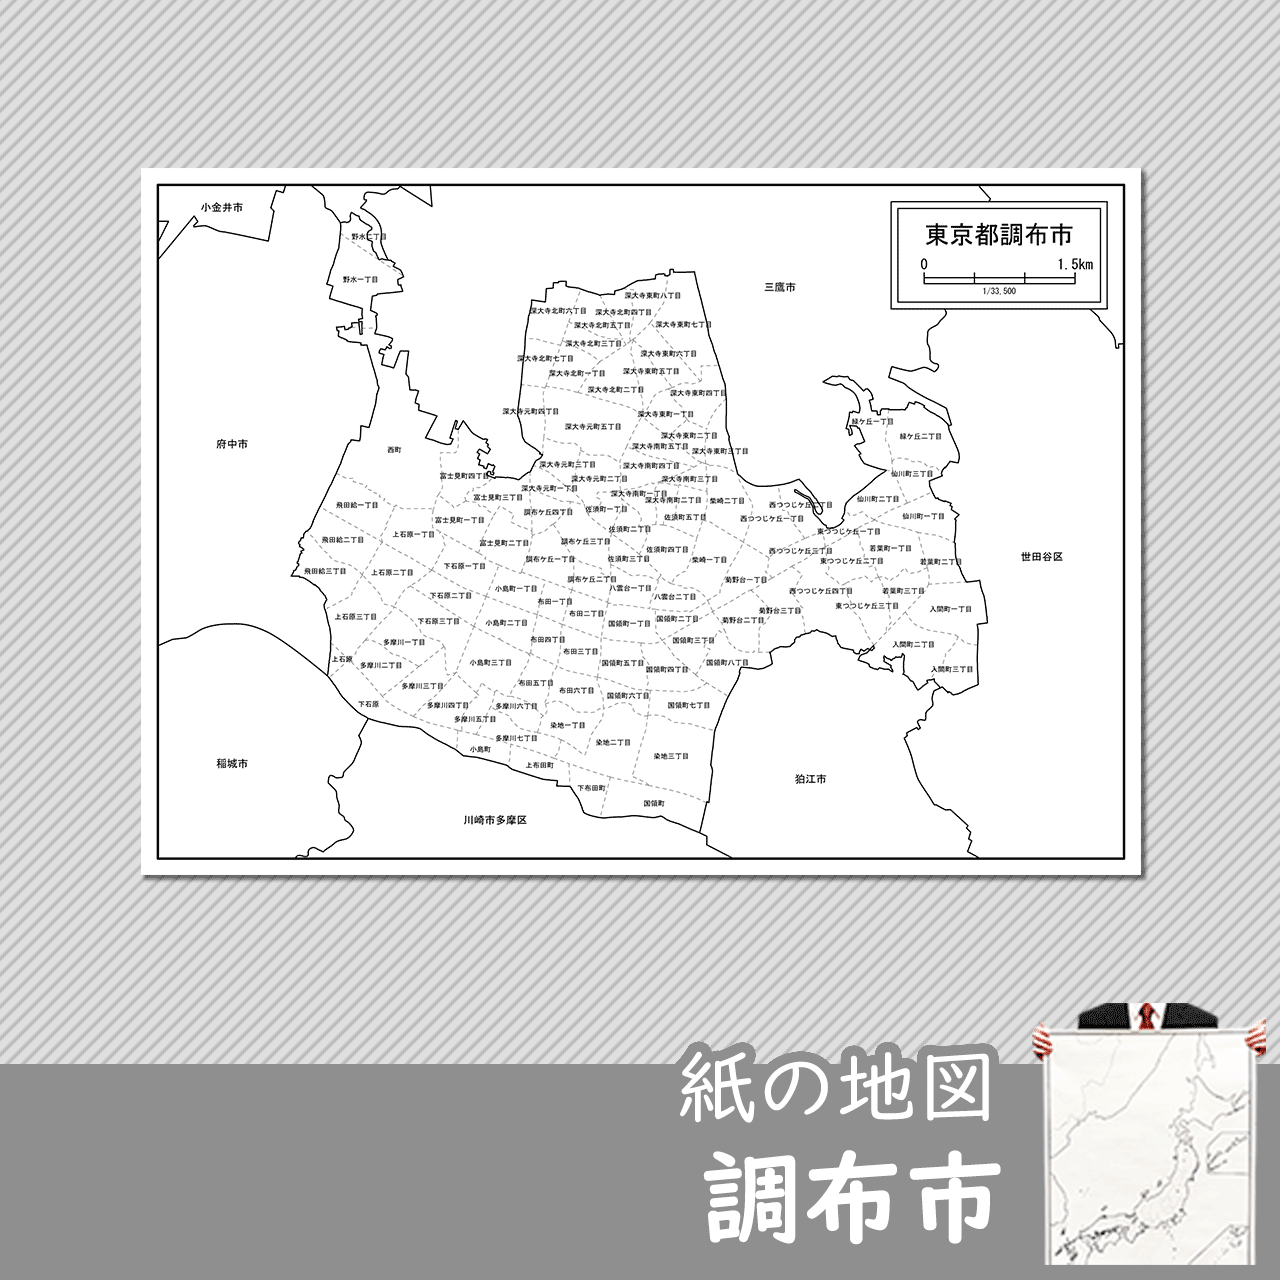 調布市の白地図